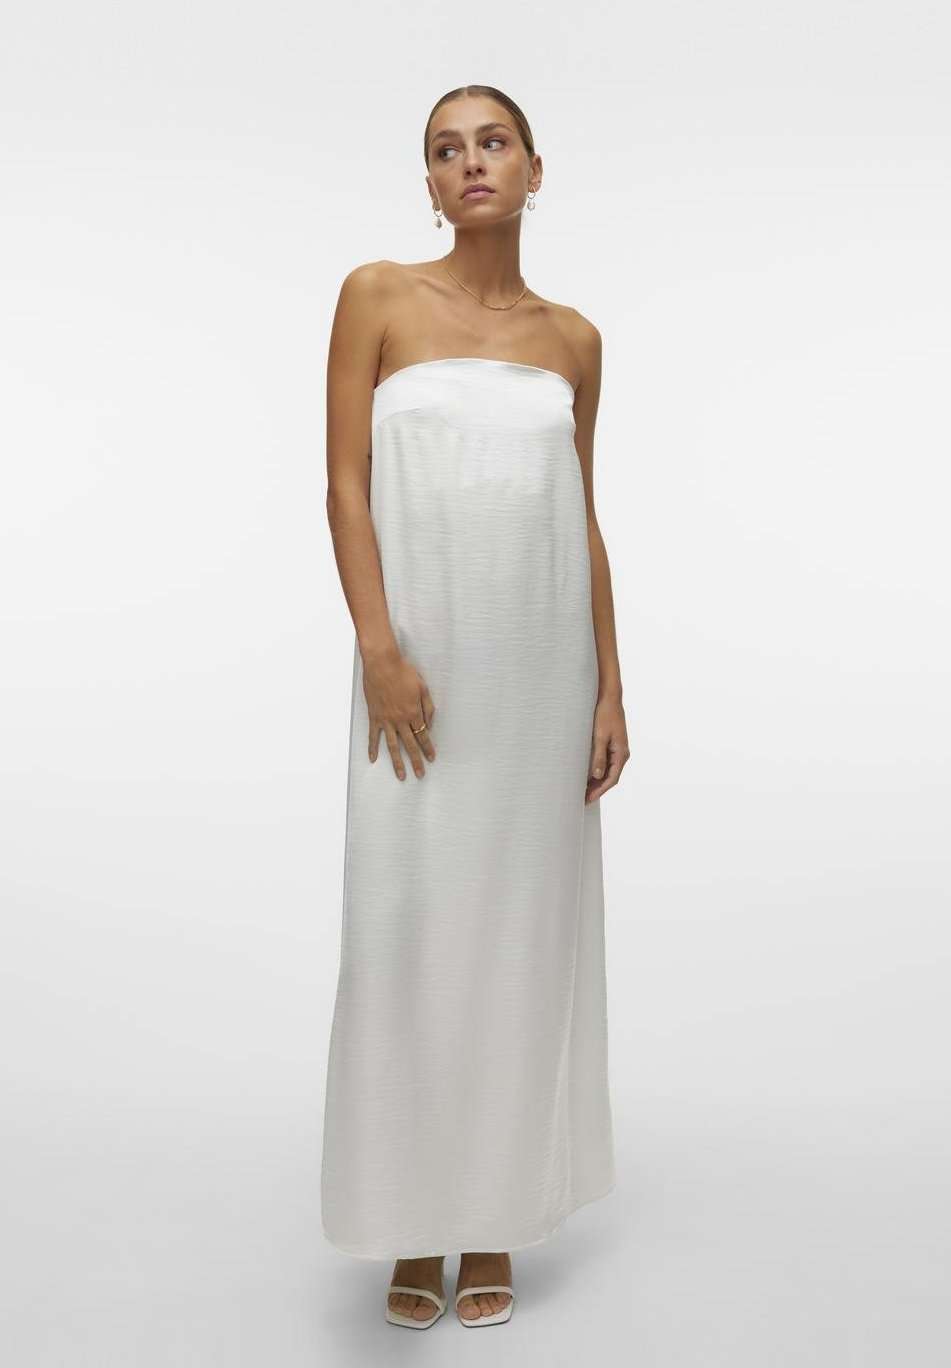 Коктельное платье VMSARAH FLOWY DRESS BRIDE